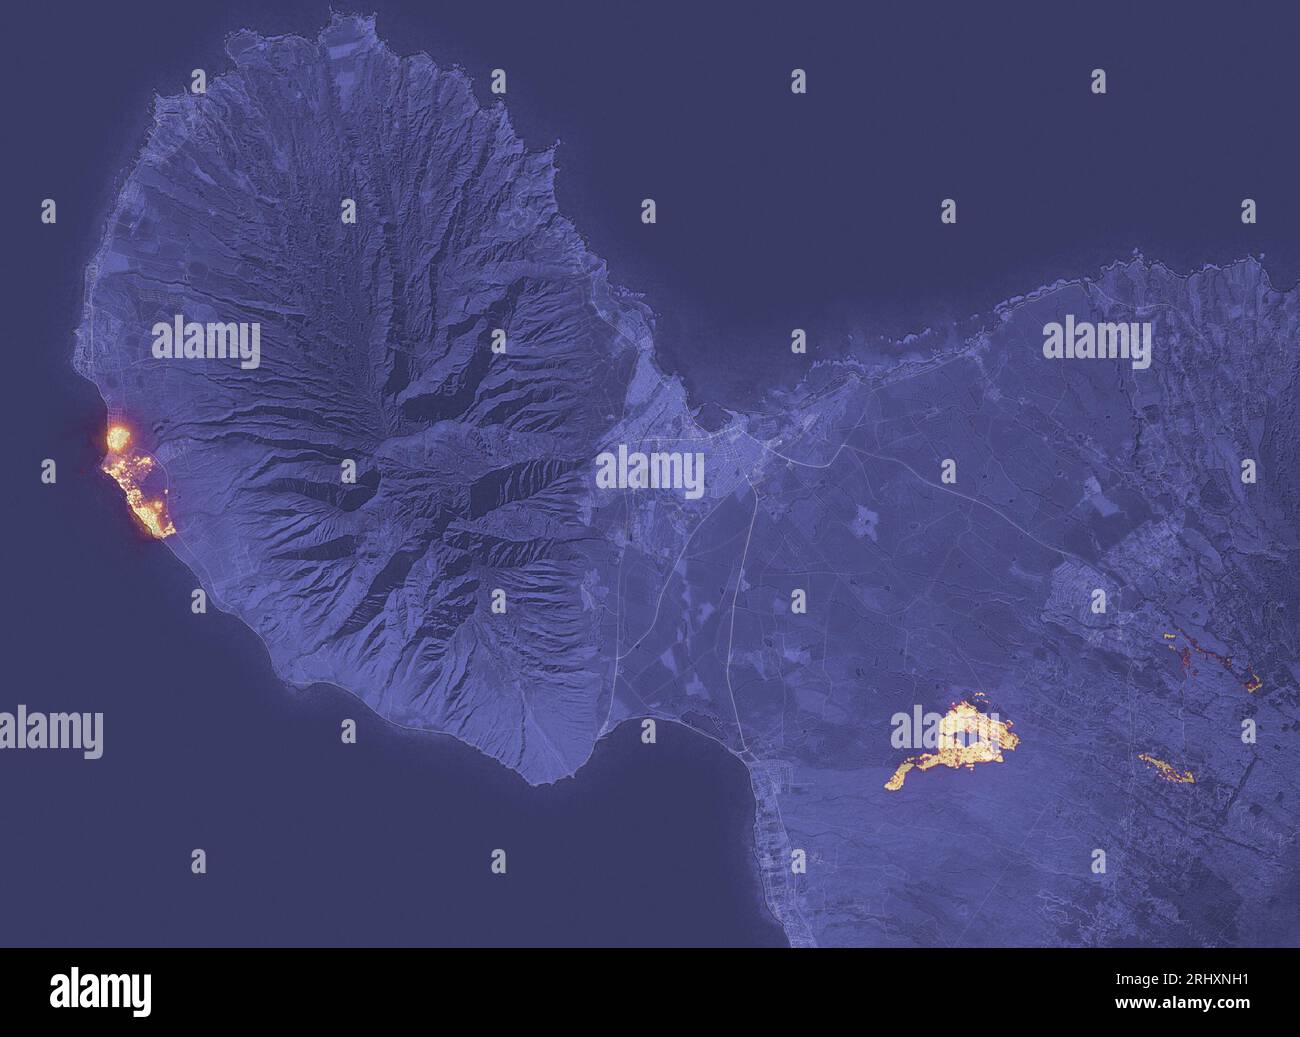 8 agosto 2023JPEG Un rapido incendio ha devastato la storica città di Lahaina a Maui, la seconda isola più grande delle Hawaii. L'immagine qui sopra mostra la firma dell'incendio alle 22:25 ora locale dell'8 agosto 2023, come osservato dall'Operational Land Imager (oli) sul satellite Landsat 8. Gran parte di Lahaina, una città con una popolazione residente di quasi 13.000 persone, sembrava essere in fiamme al momento dell'immagine. Un altro grande incendio bruciò a nord-est di Kihei. Gli incendi si verificarono durante un periodo di forti venti e condizioni secche a Maui. Tra il 7 e il 9 agosto 2023, l'isola ha sperimentato il picco Foto Stock